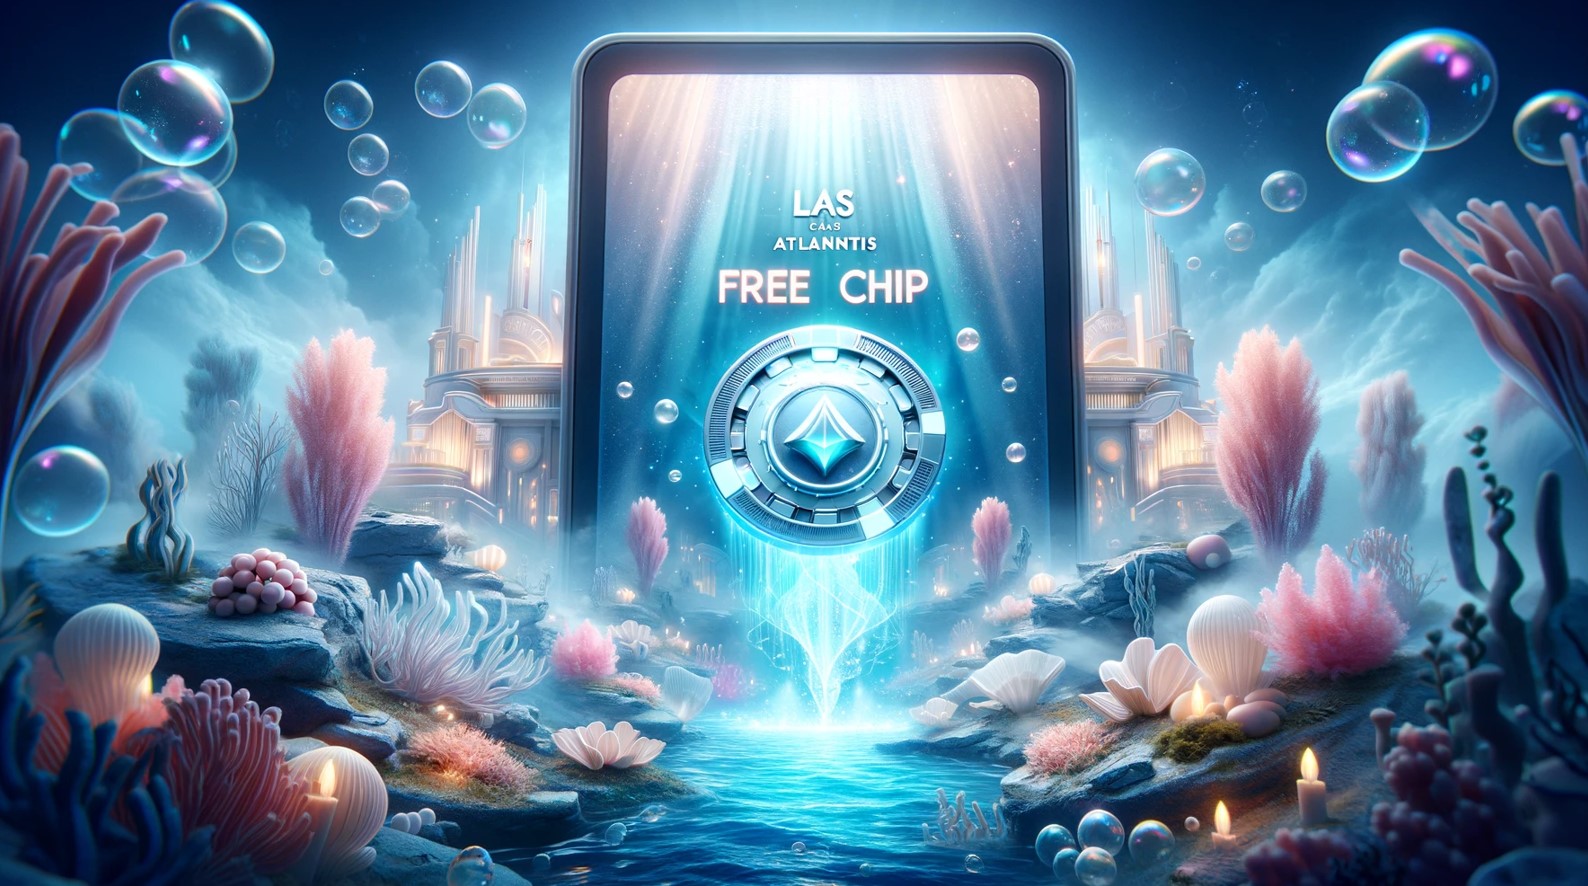 Las Atlantis casino free chip 2